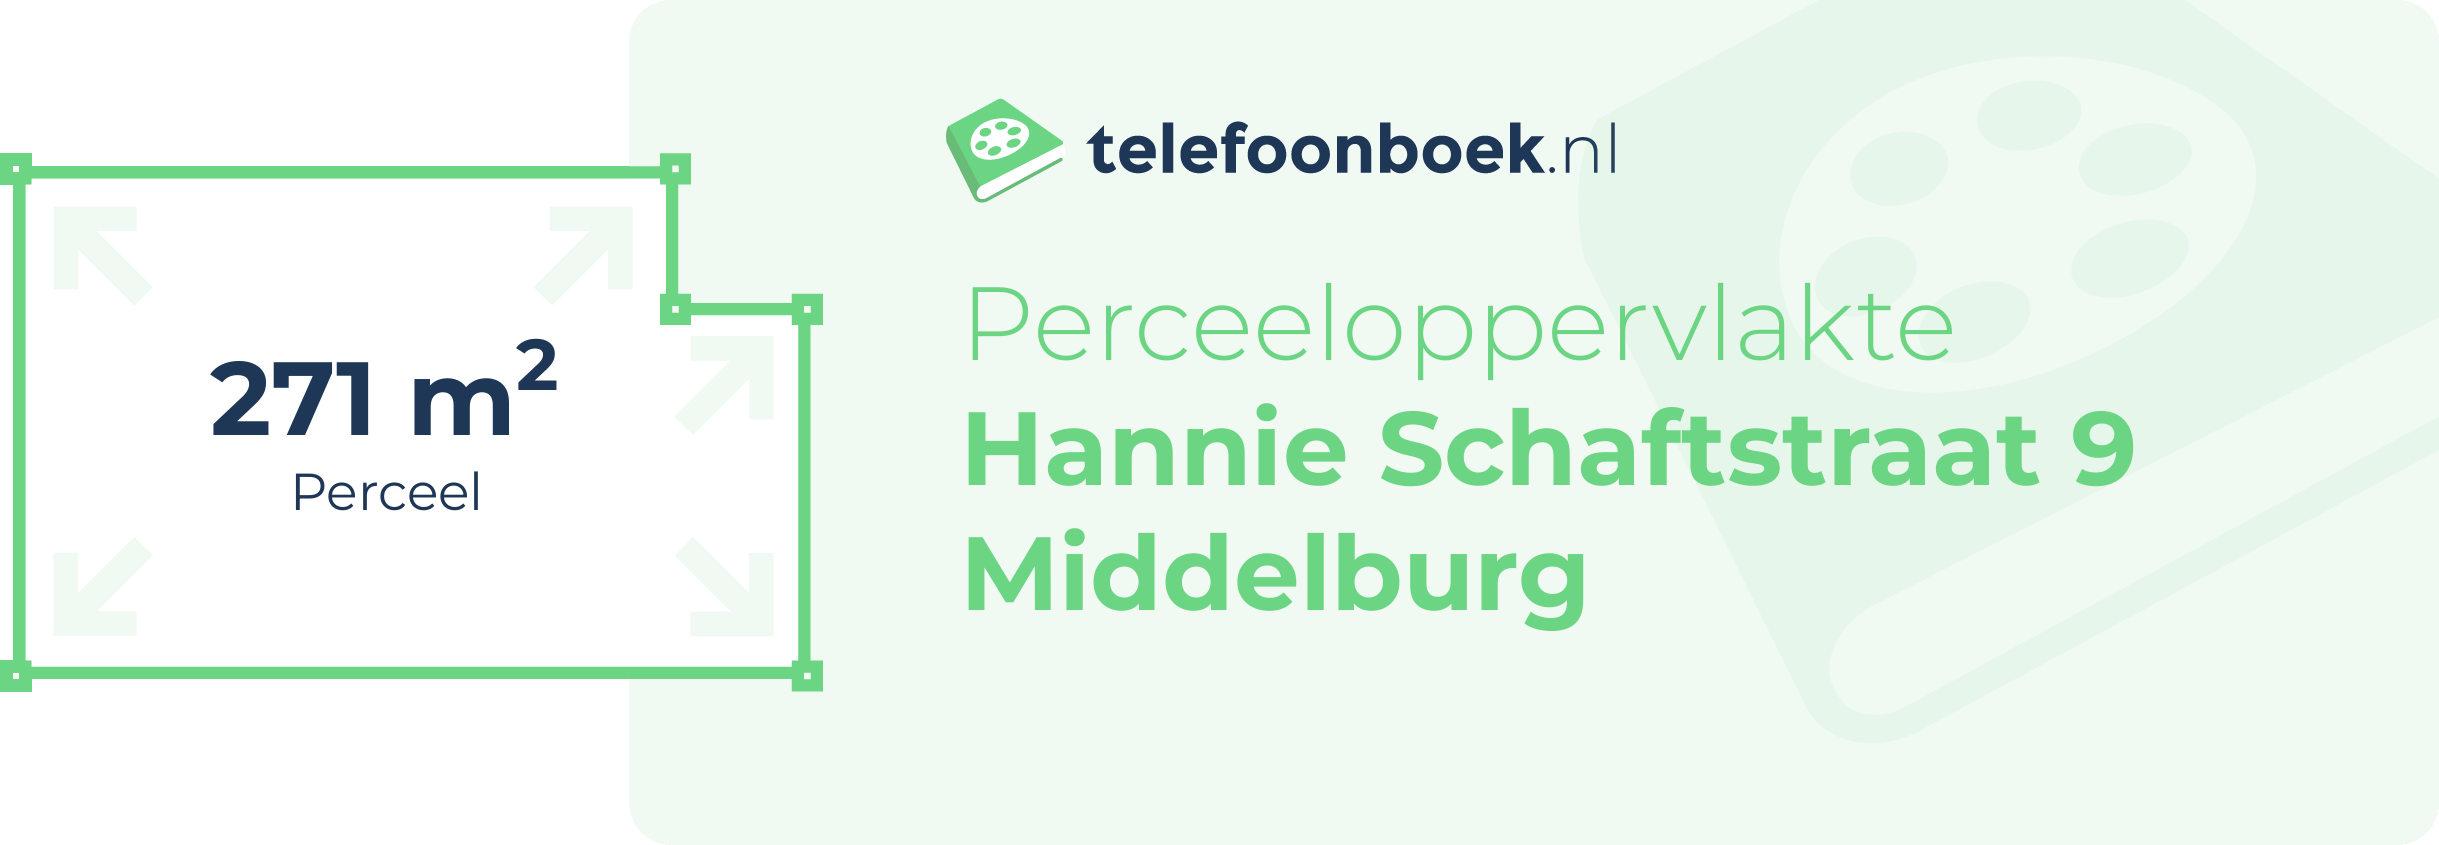 Perceeloppervlakte Hannie Schaftstraat 9 Middelburg